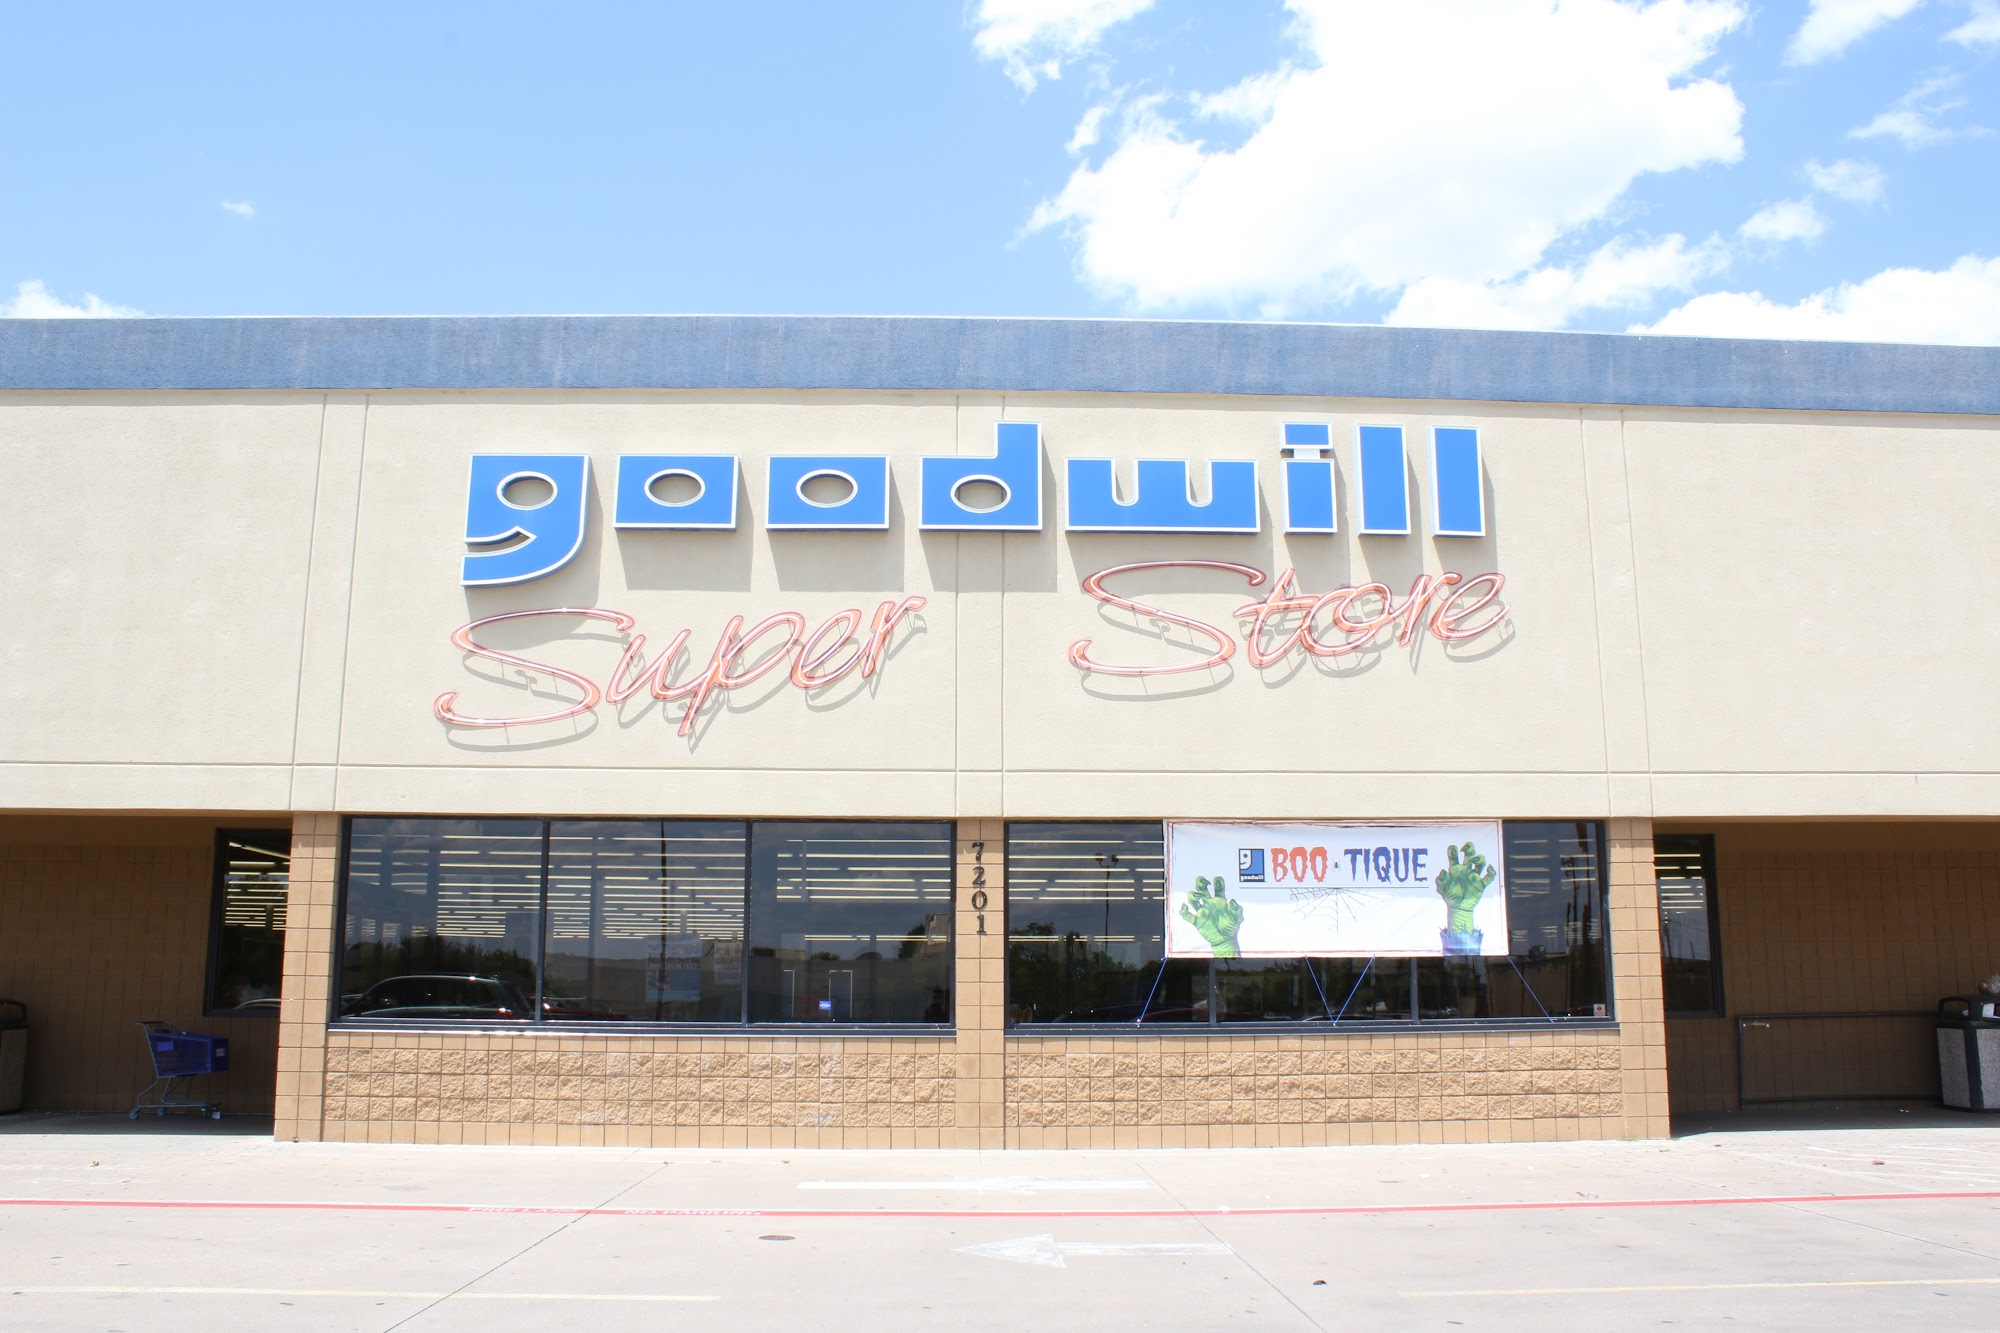 Goodwill Store - Watauga